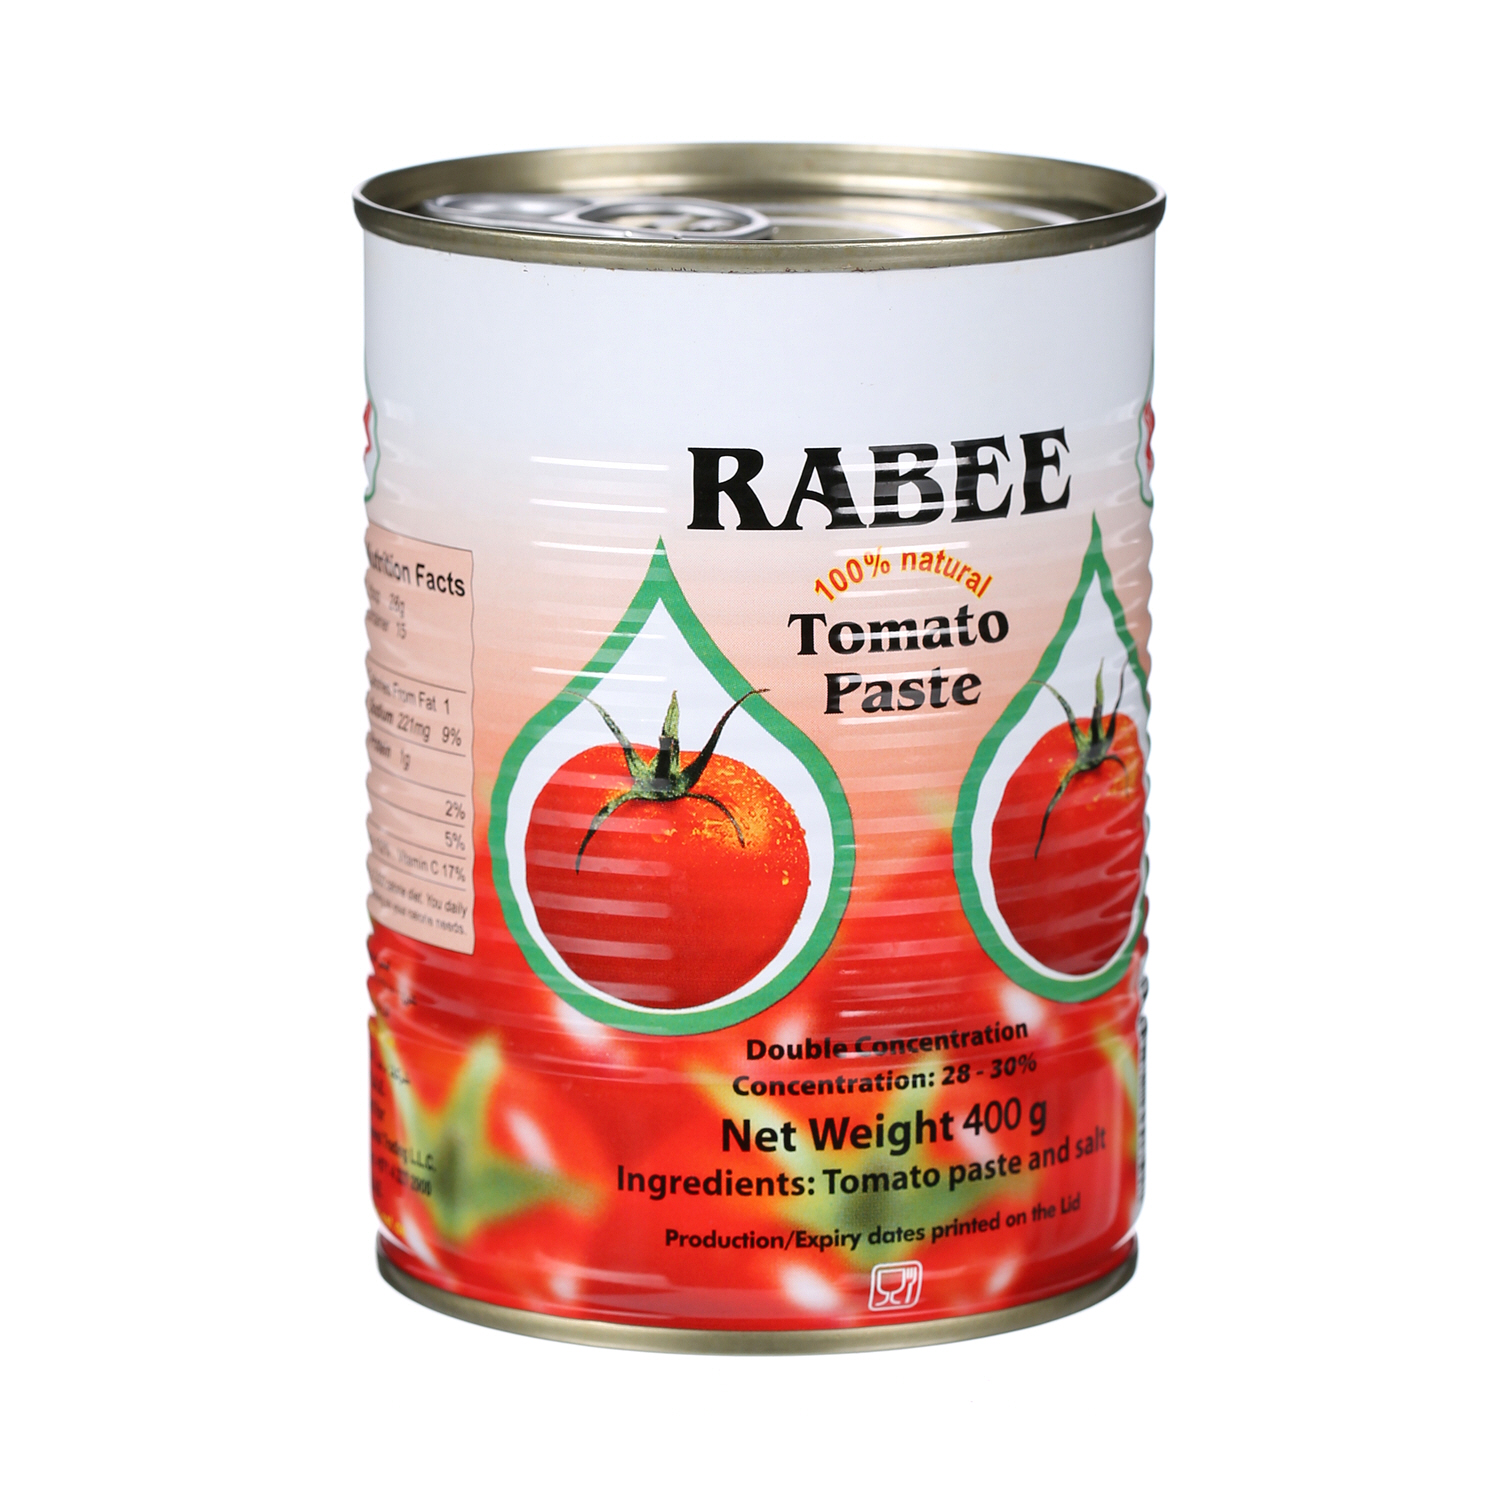 Rabee Tomato Paste 400 g